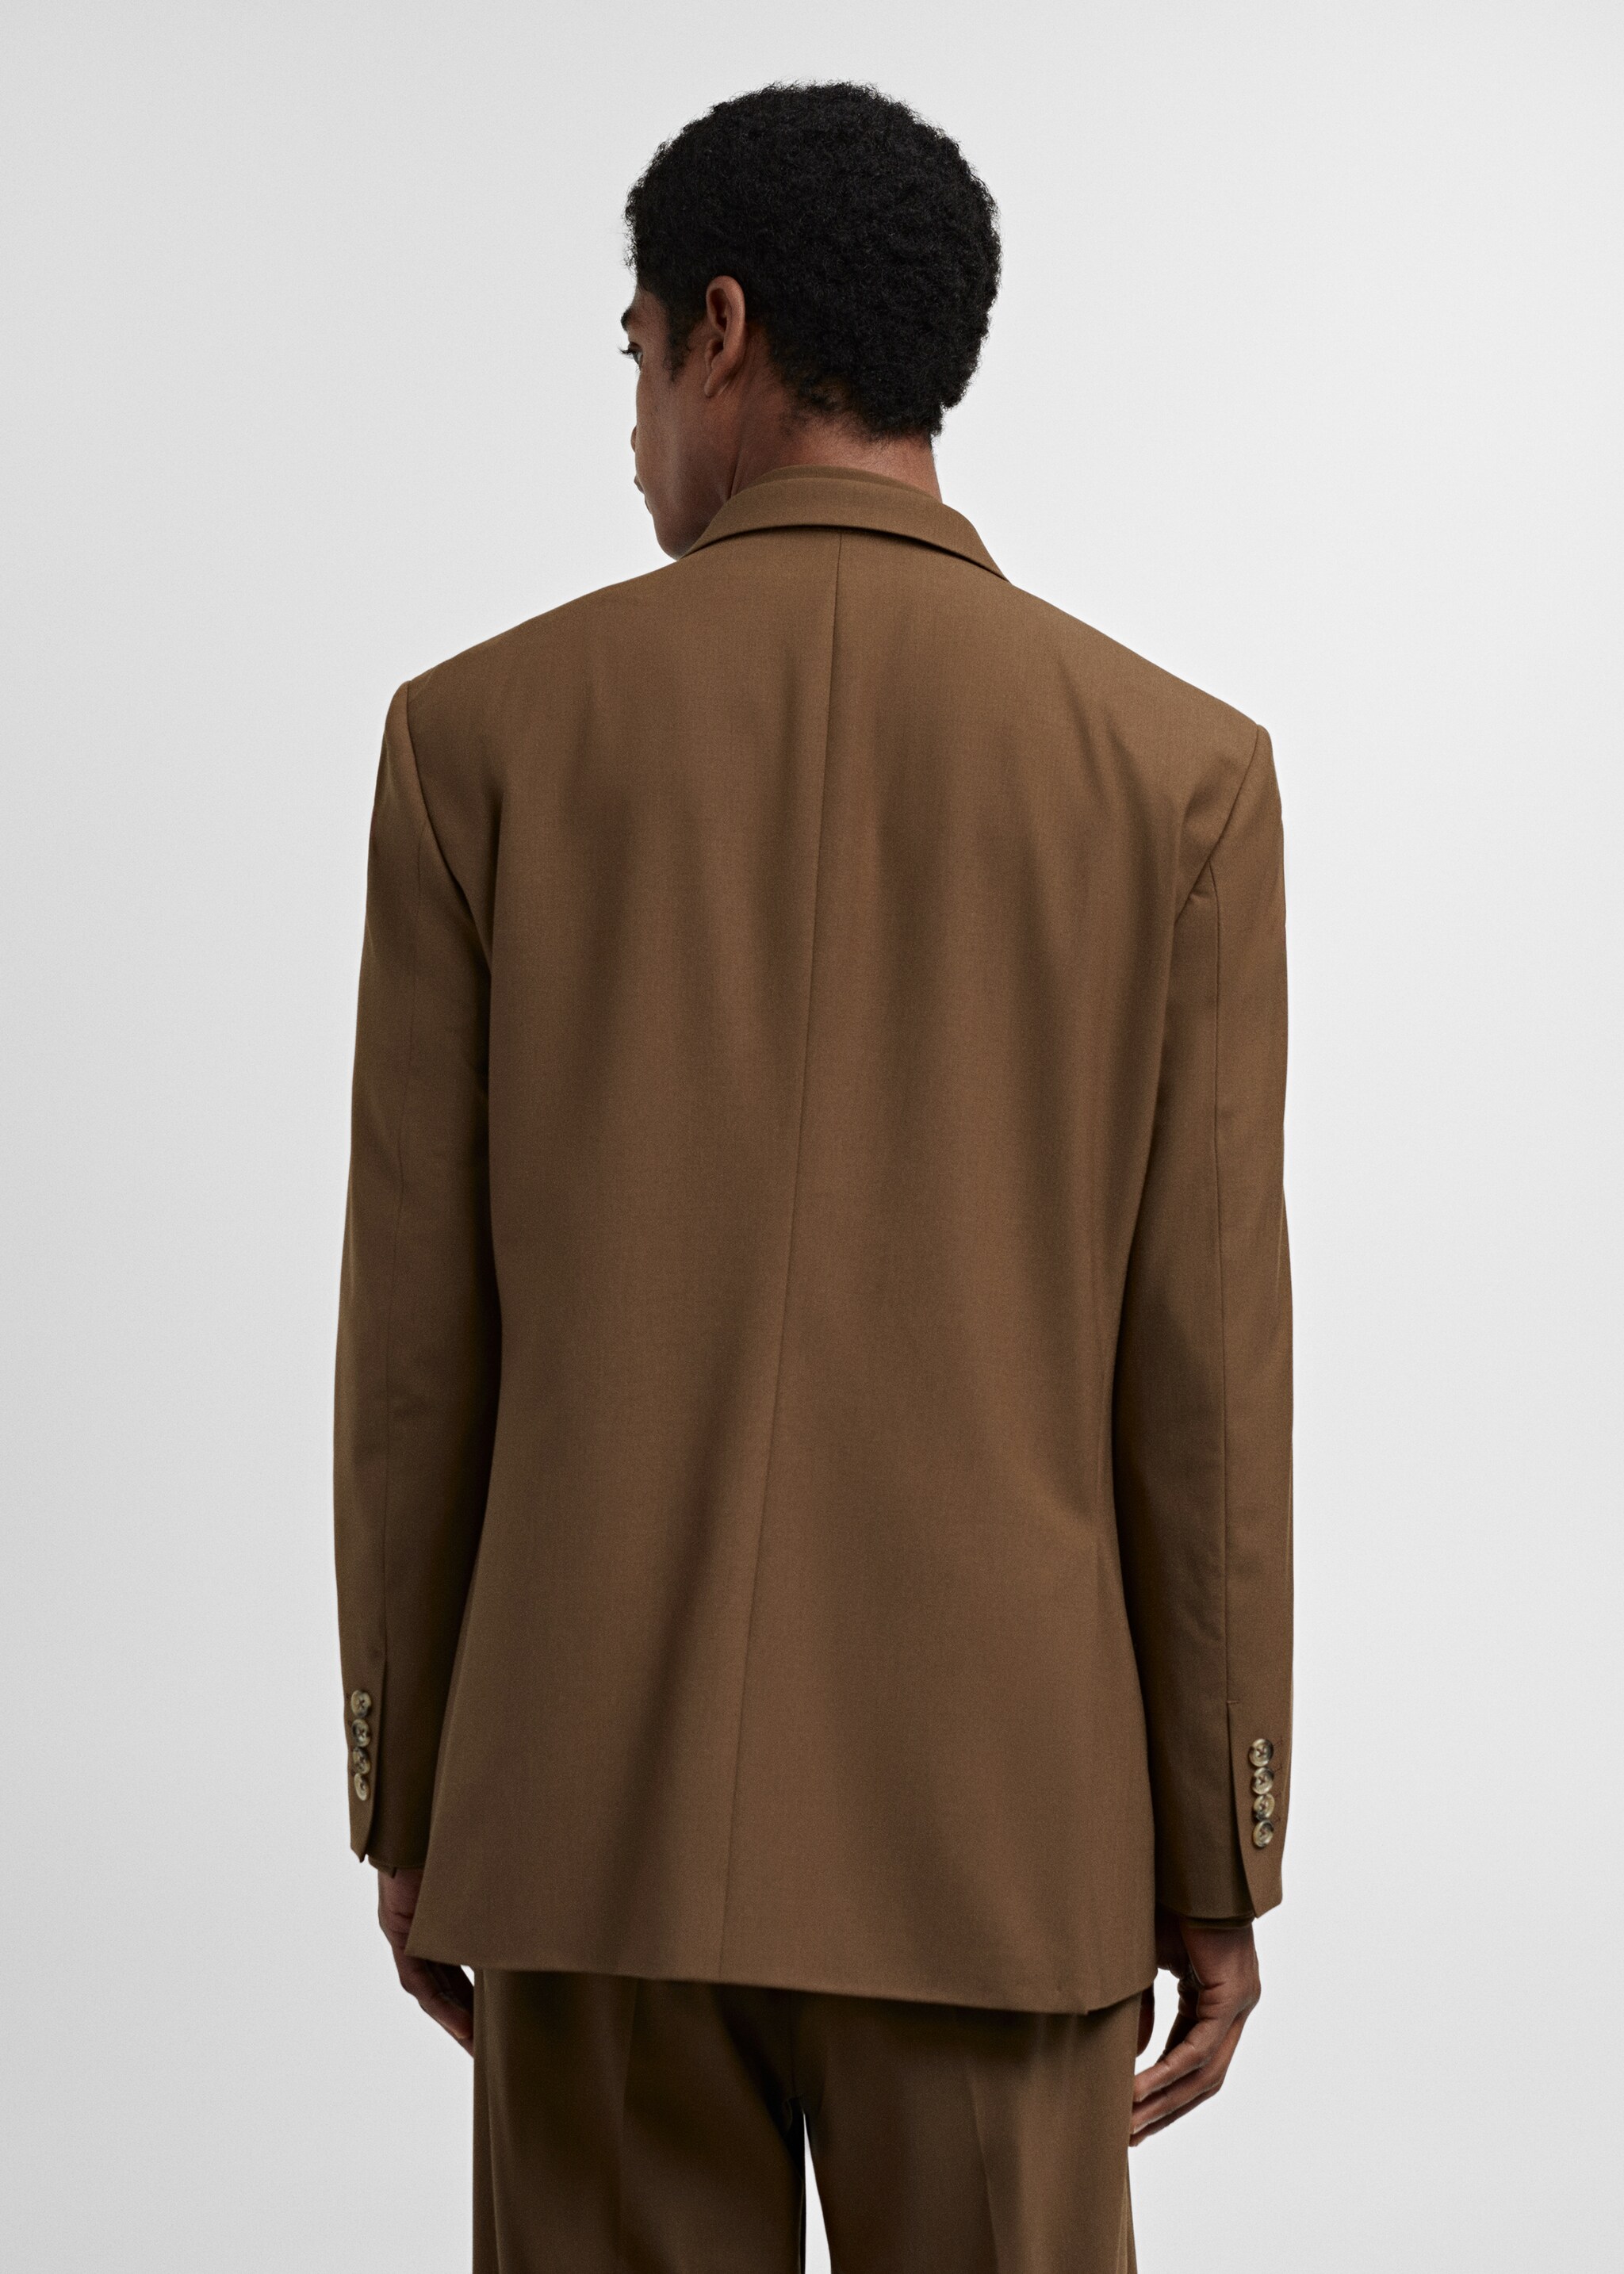 Σακάκι κοστουμιού regular fit cool wool - Πίσω όψη προϊόντος